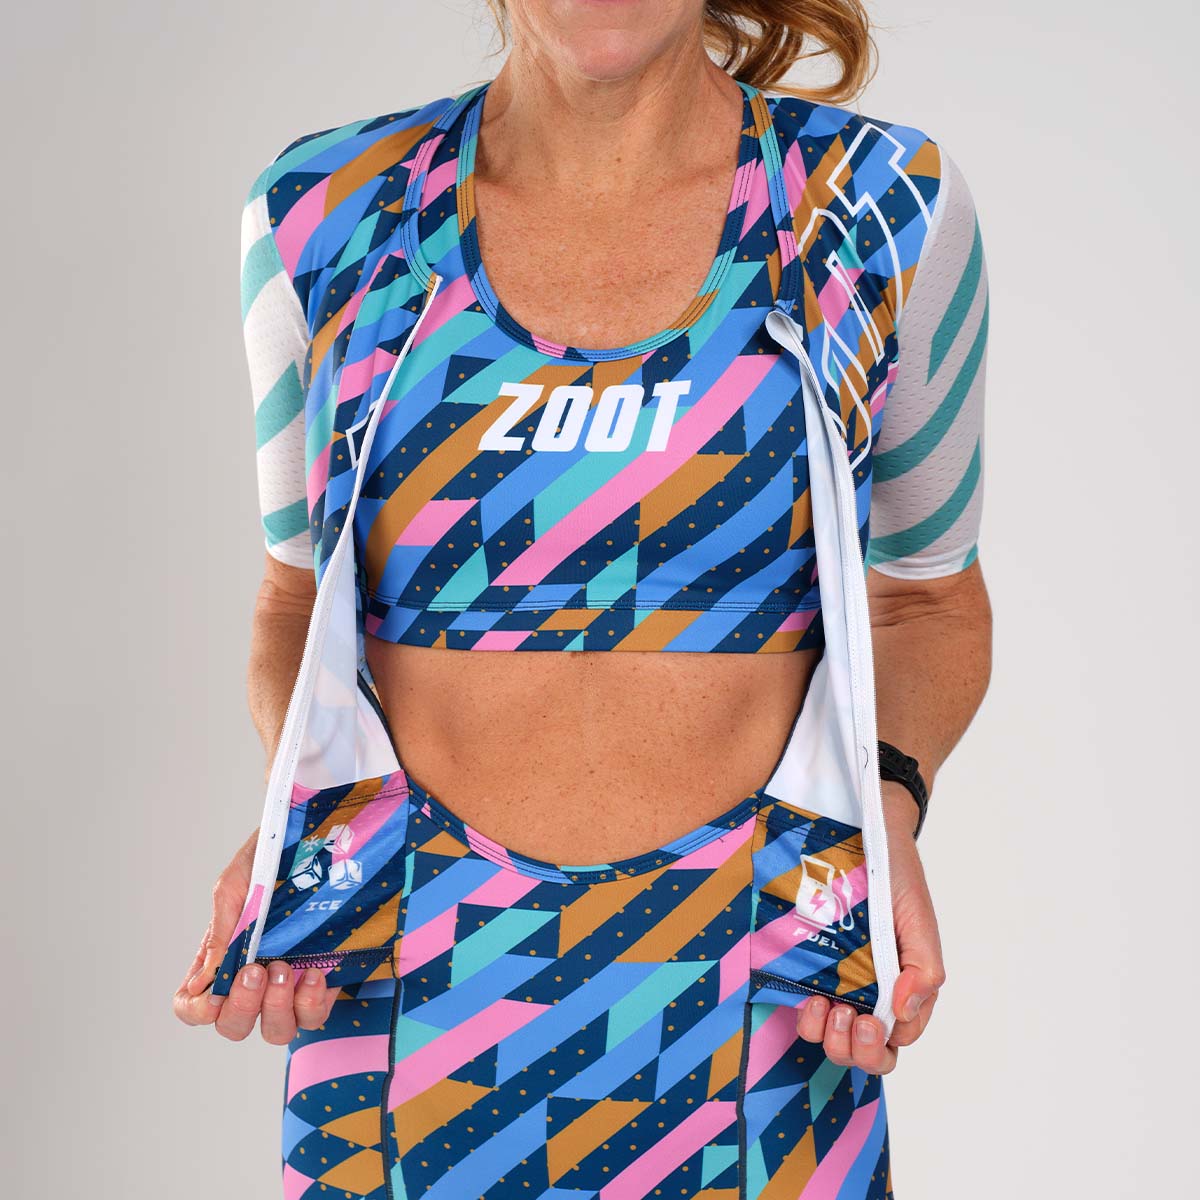 Zoot Sports TRI RACESUITS Women's Ltd Tri Aero Fz Racesuit - Unbreakable